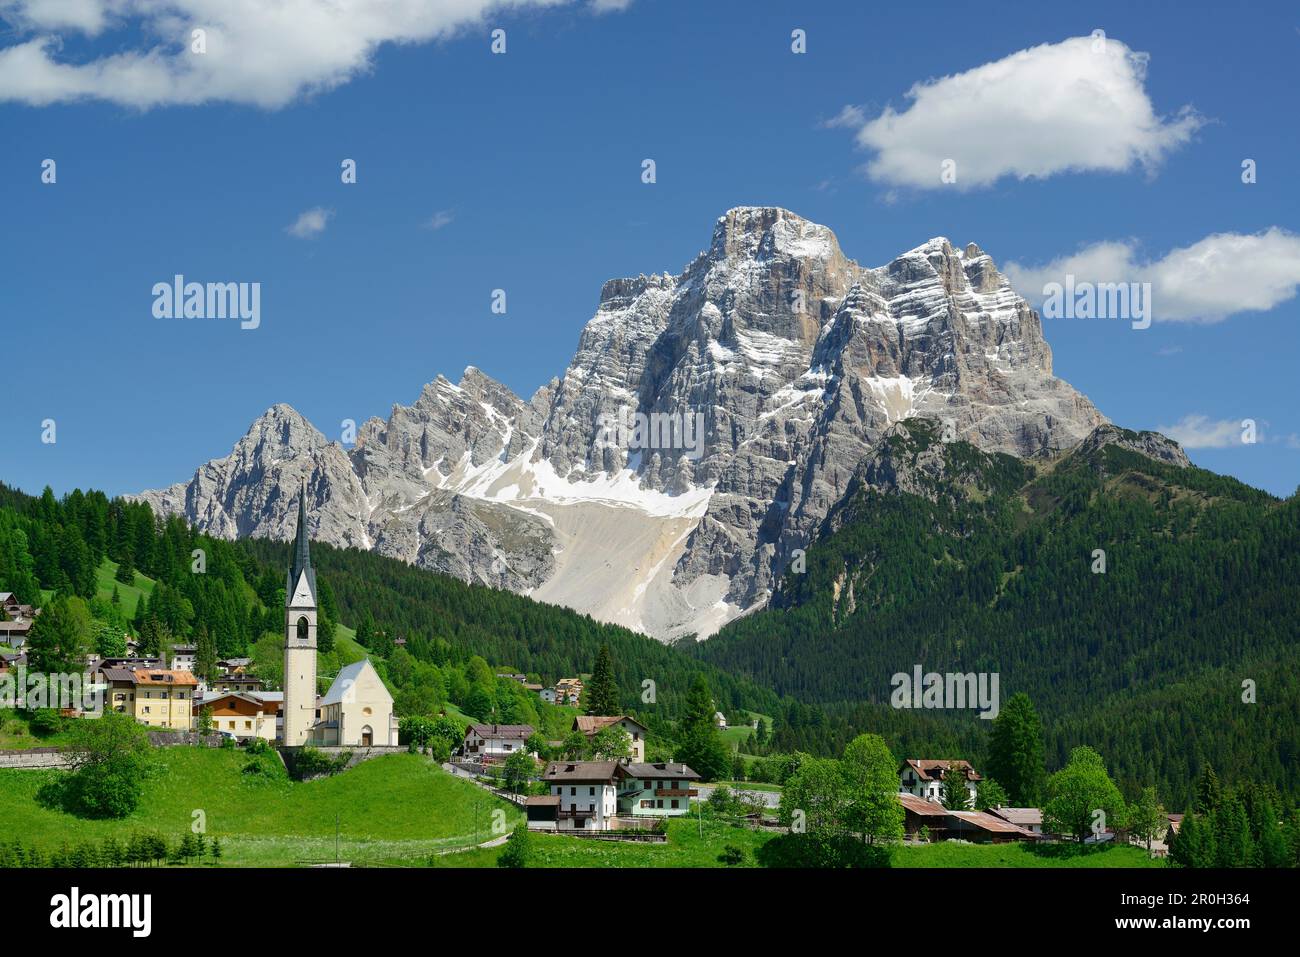 Selva di Cadore with Monte Pelmo, Selva di Cadore, Dolomites, UNESCO world heritage site Dolomites, Venetia, Italy Stock Photo